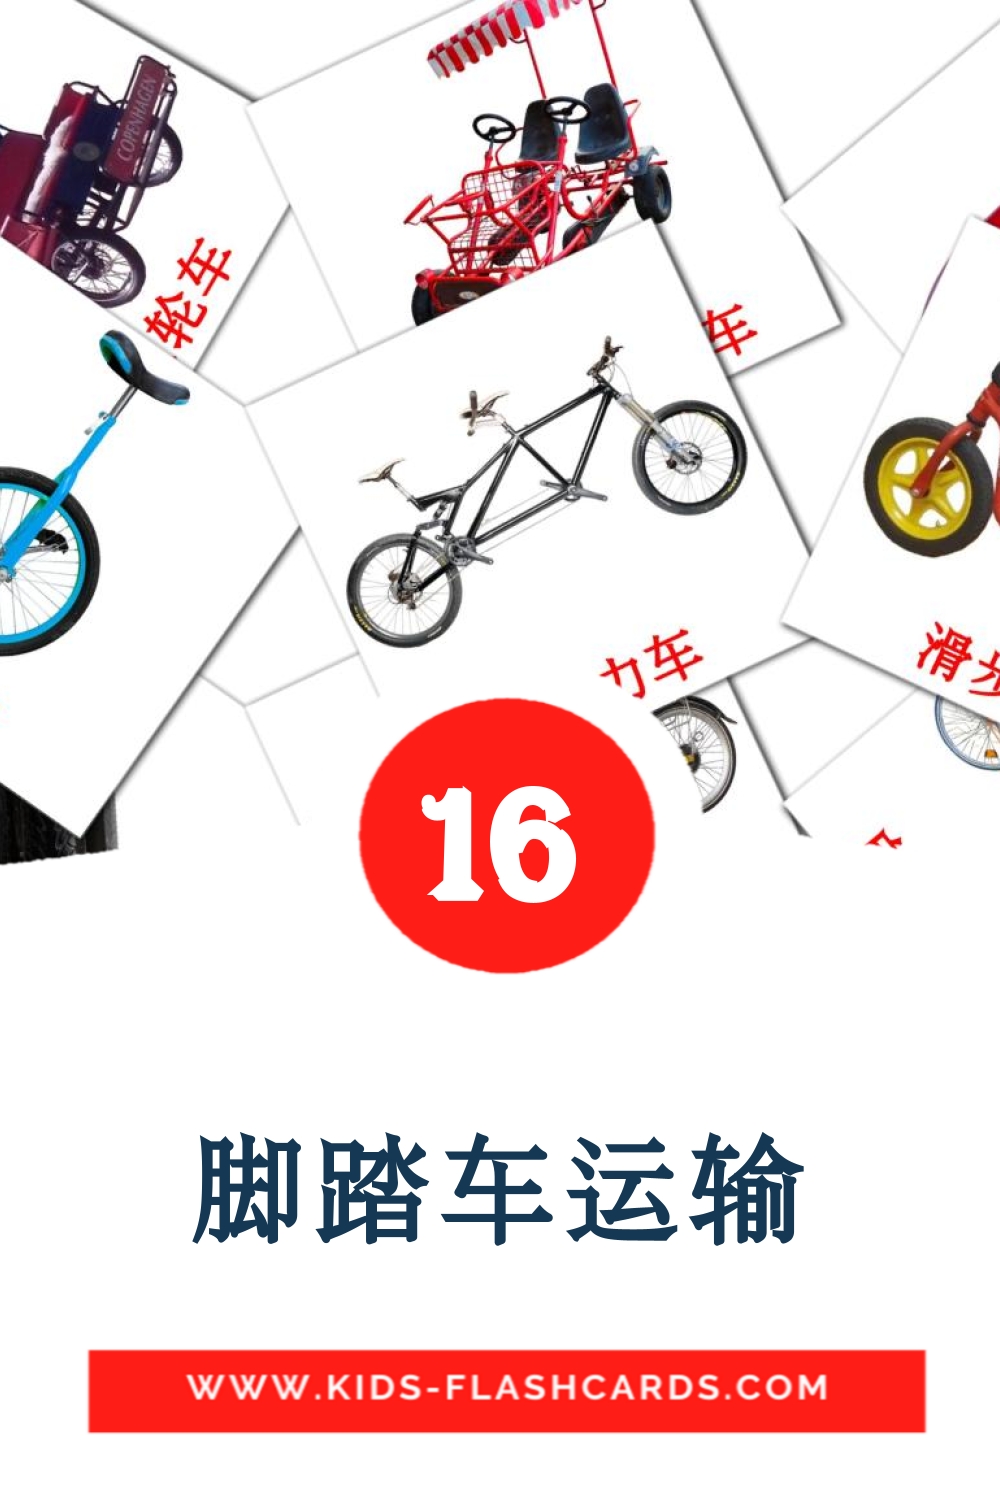 16 脚踏车运输 Picture Cards for Kindergarden in chinese(Simplified)